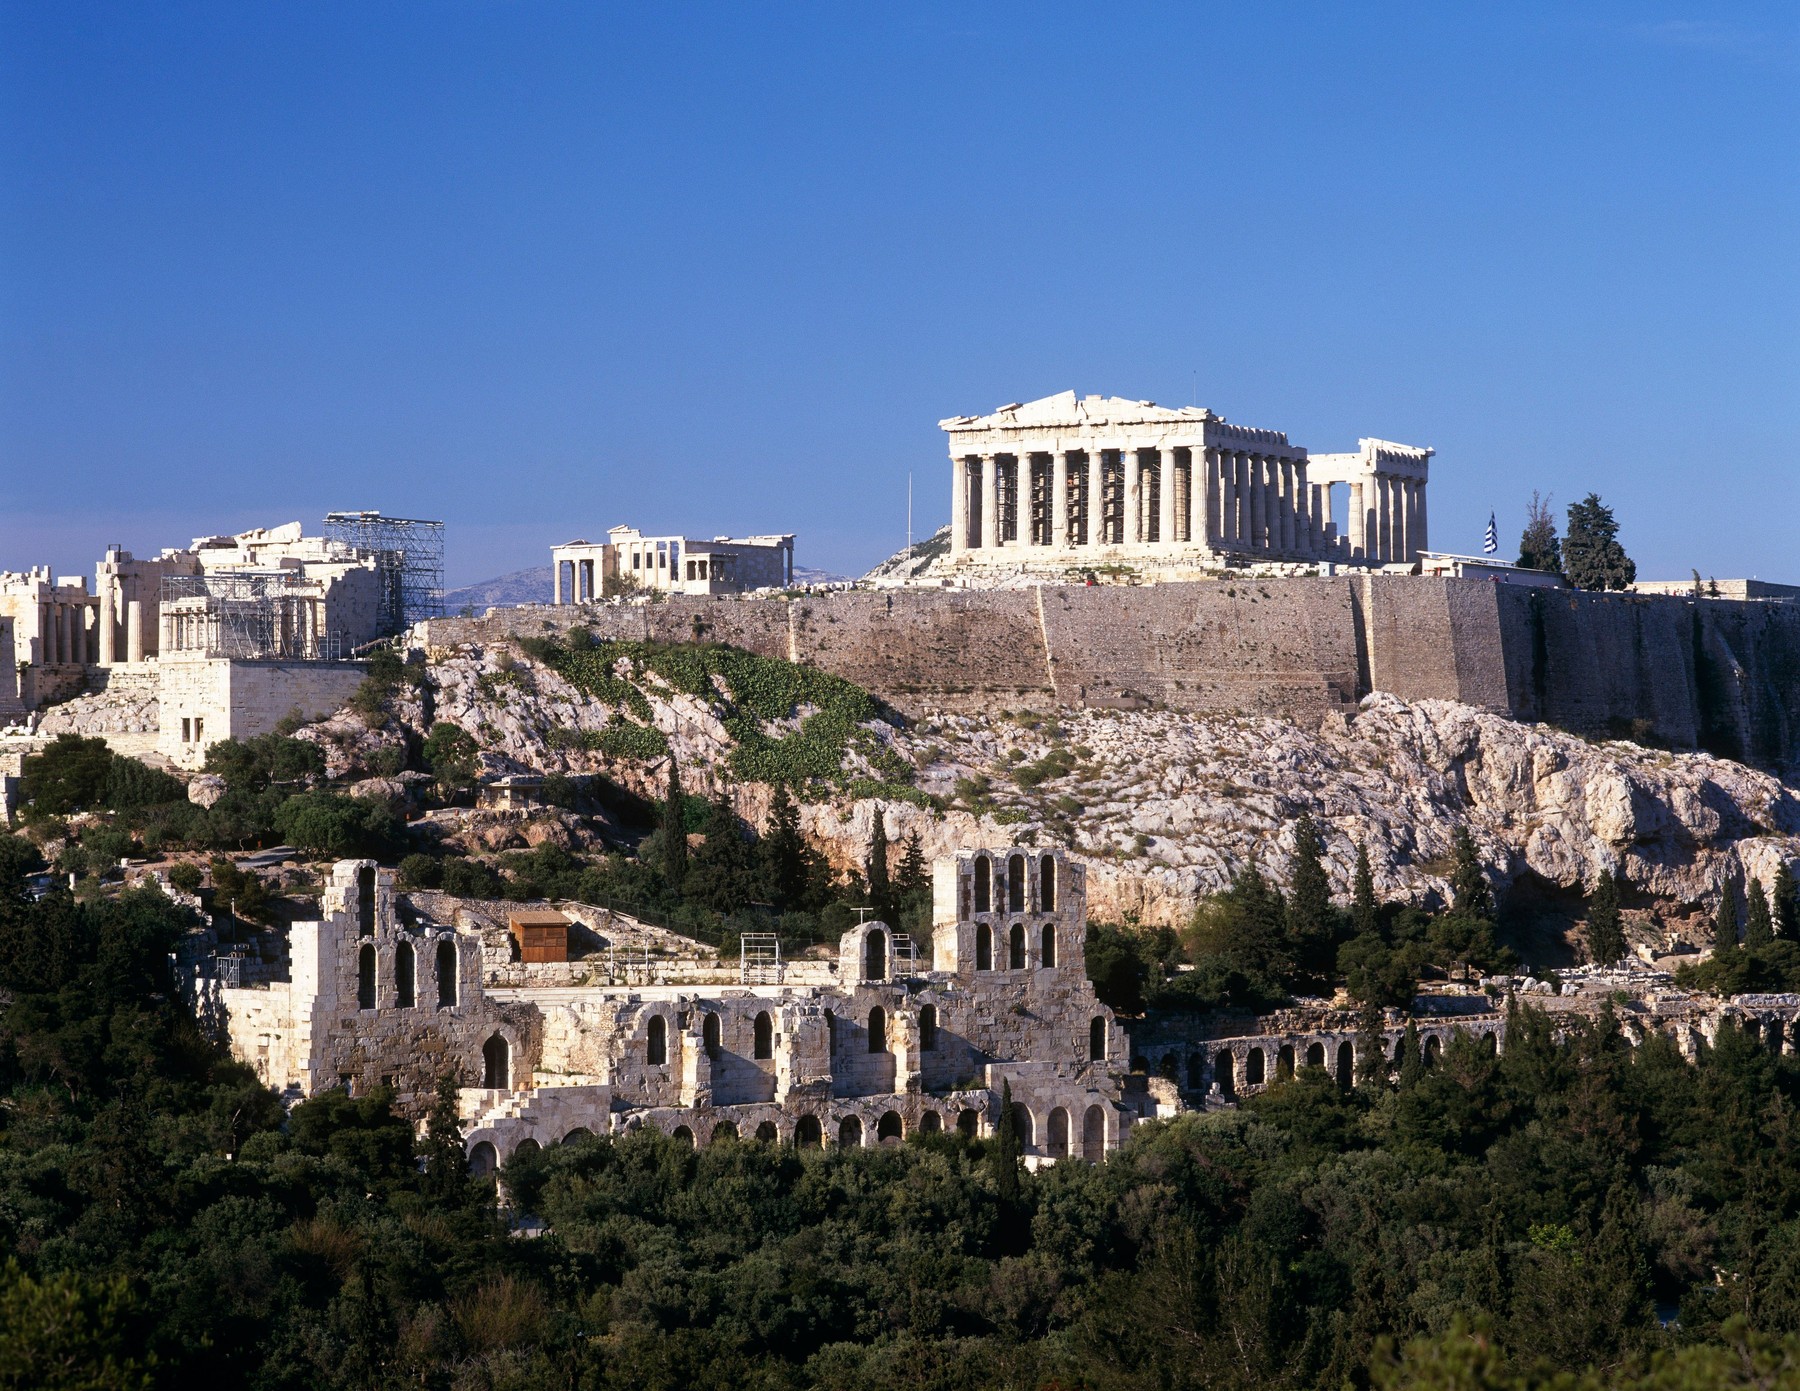 Ξαναγράφοντας την ιστορία, γιγάντιο αρχαίο πράγμα που βρέθηκε κάτω από τον Παρθενώνα στην Αθήνα, το επισκέπτονται εκατομμύρια παραθεριστές κάθε χρόνο